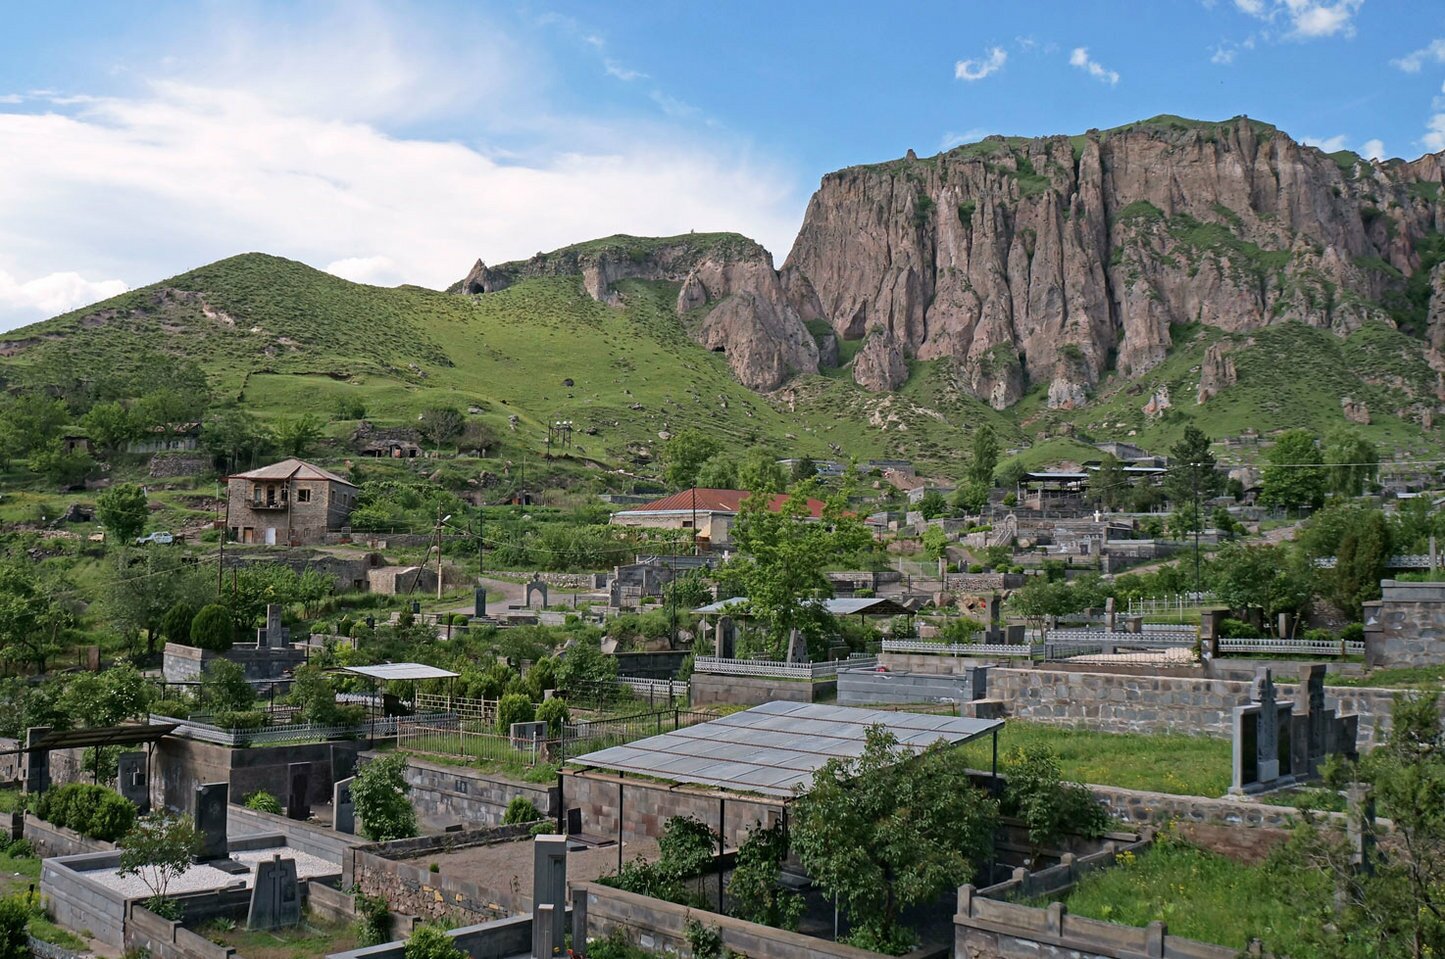 Ни минуты больше: азербайджанцы требуют в течение часа освободить 12 зданий садоводства в Горисе